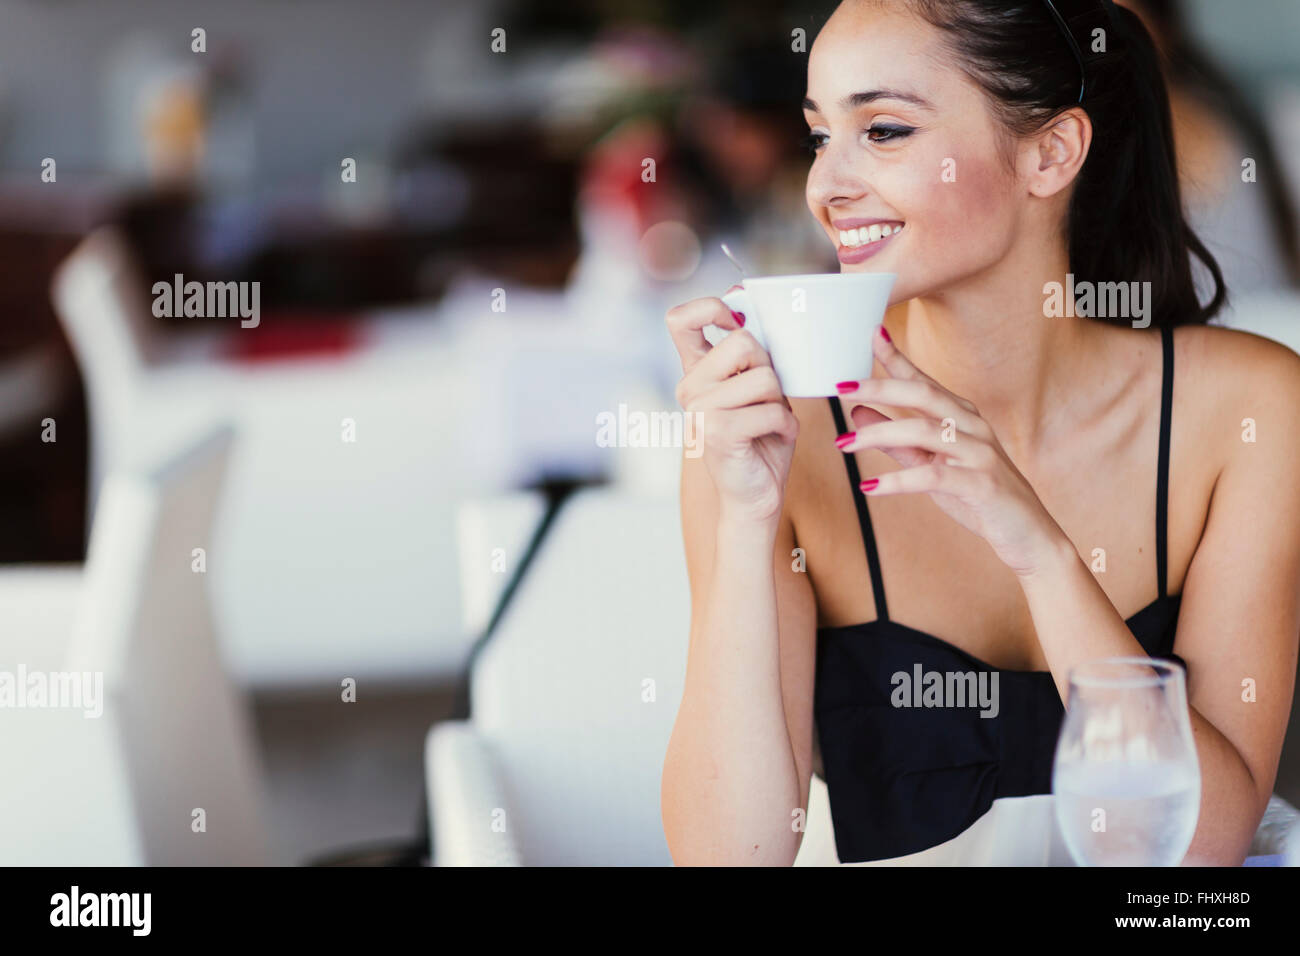 Schöne Frau trinkt Tee im Restaurant während des Wartens auf ihre Mahlzeit Stockfoto